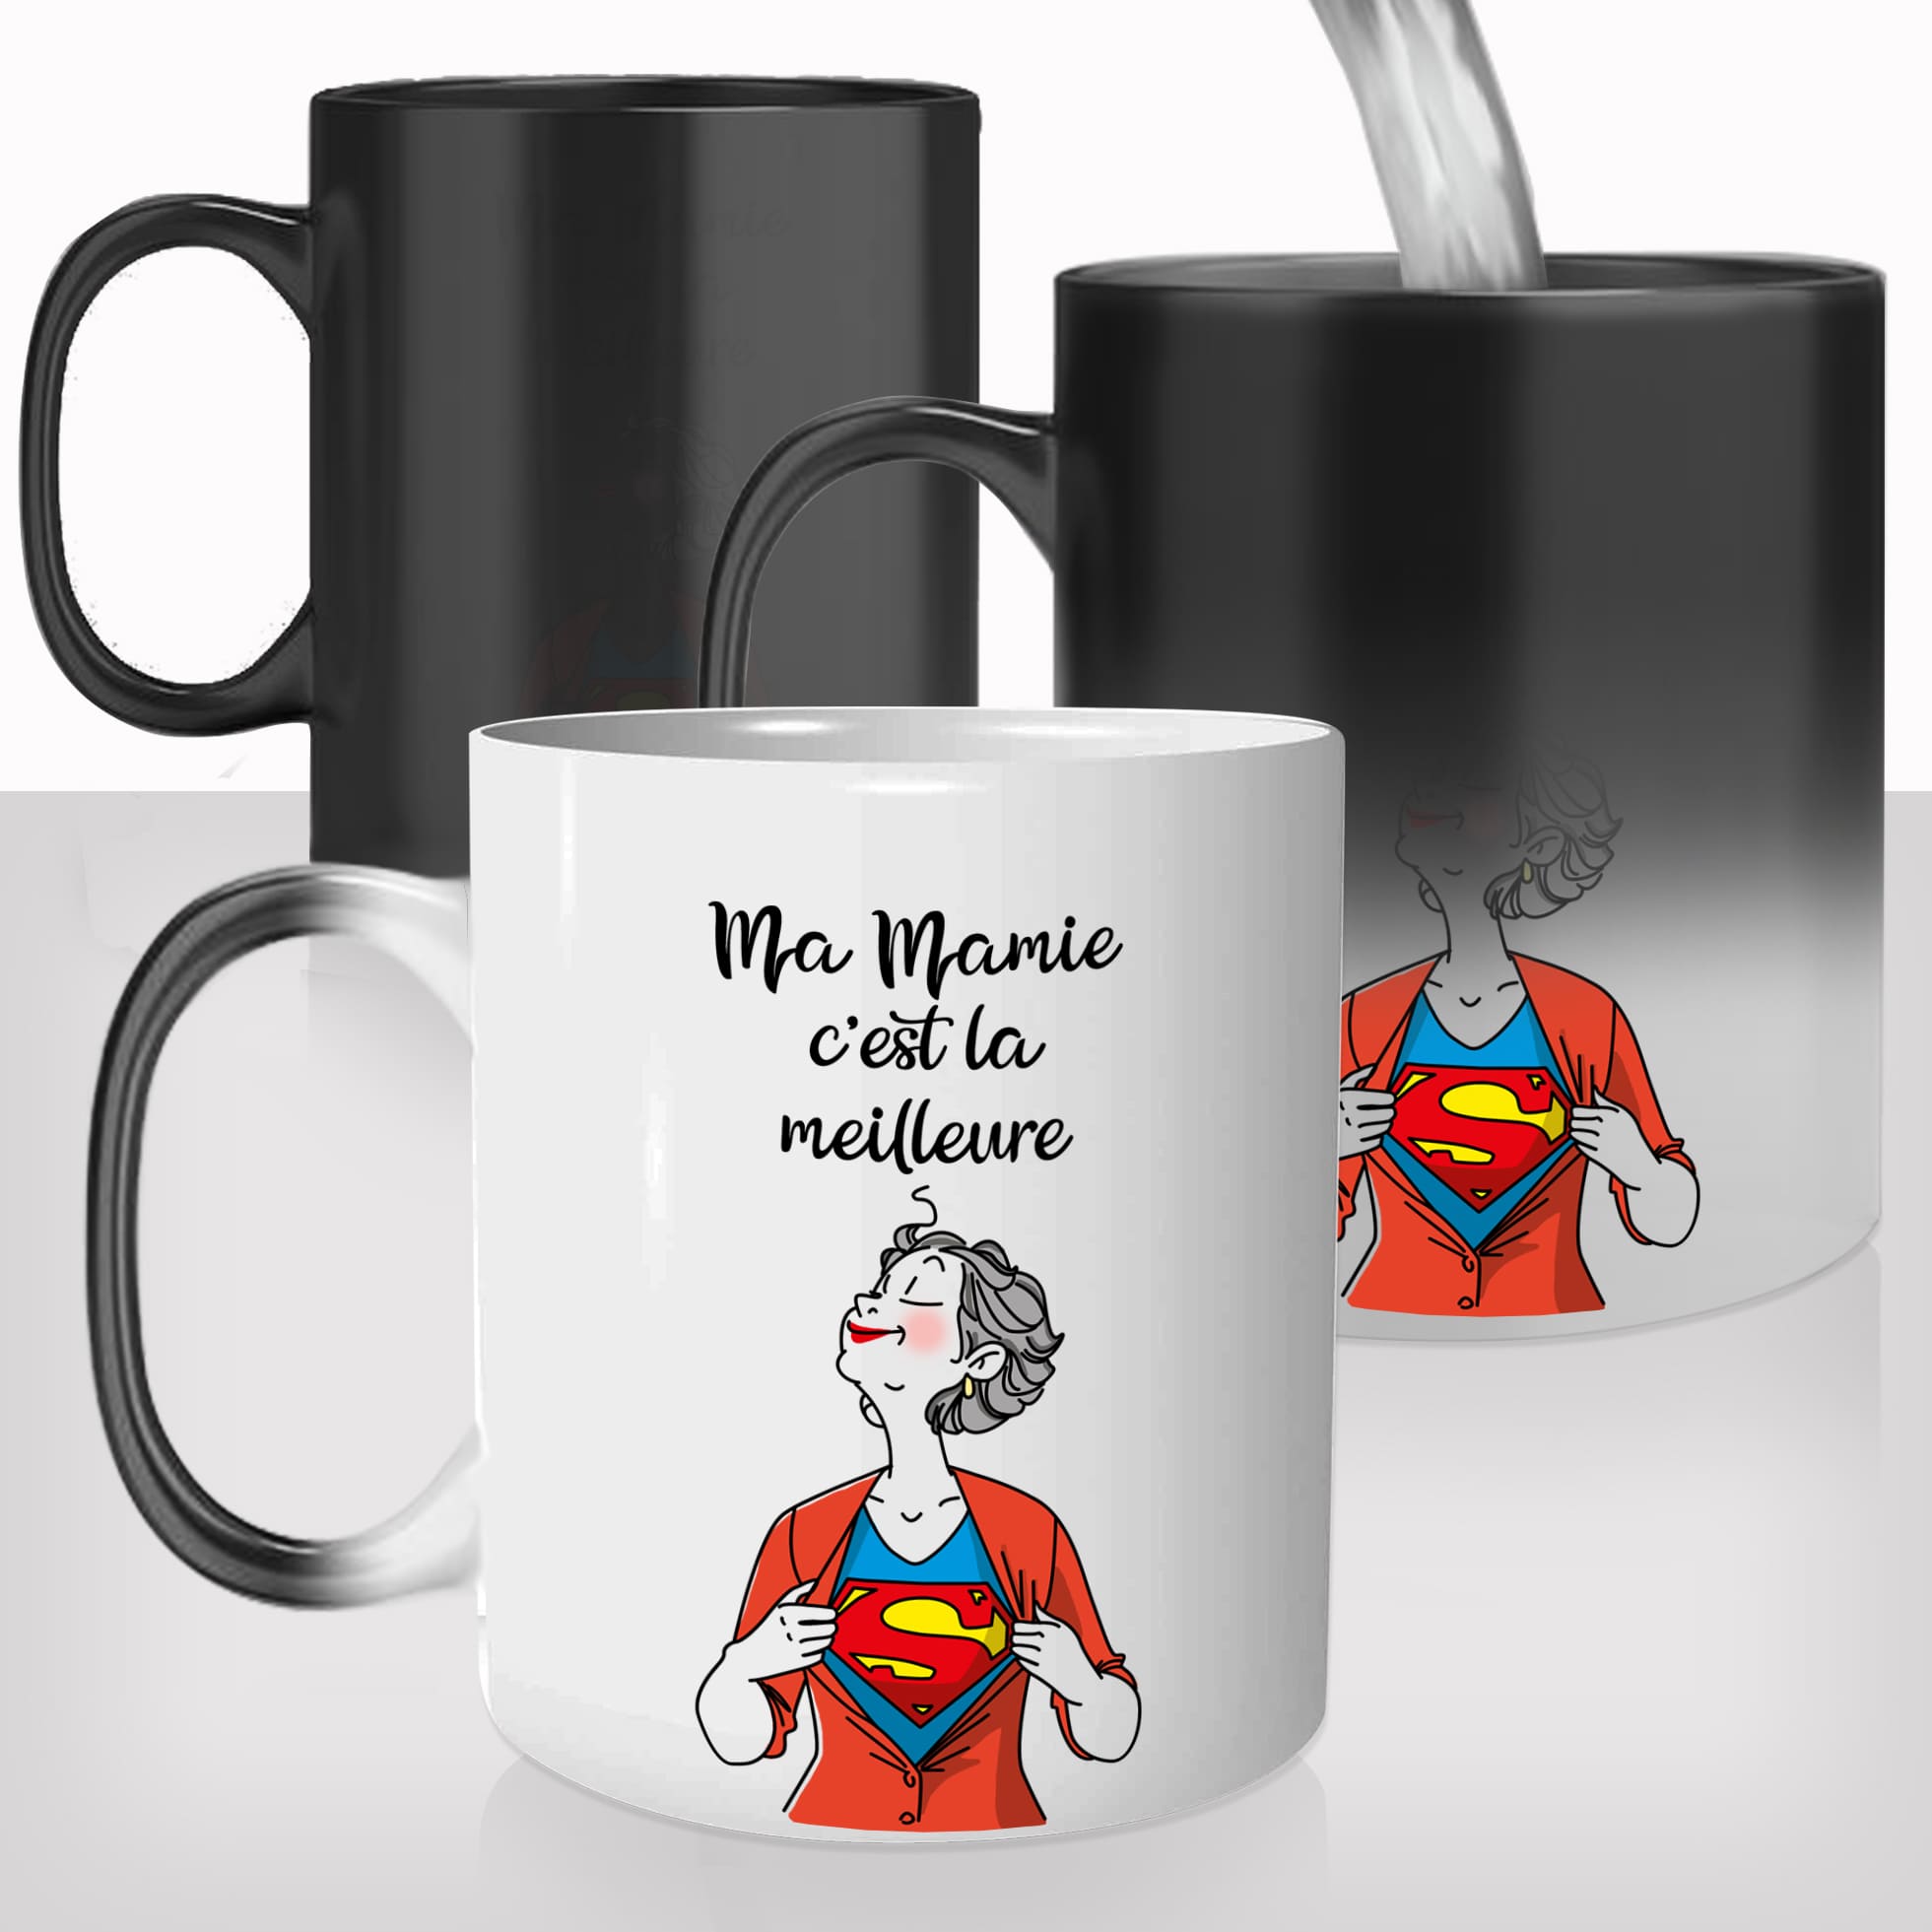 Mug Super Mamie - Fête des Grands-Mères - Mug-Cadeau